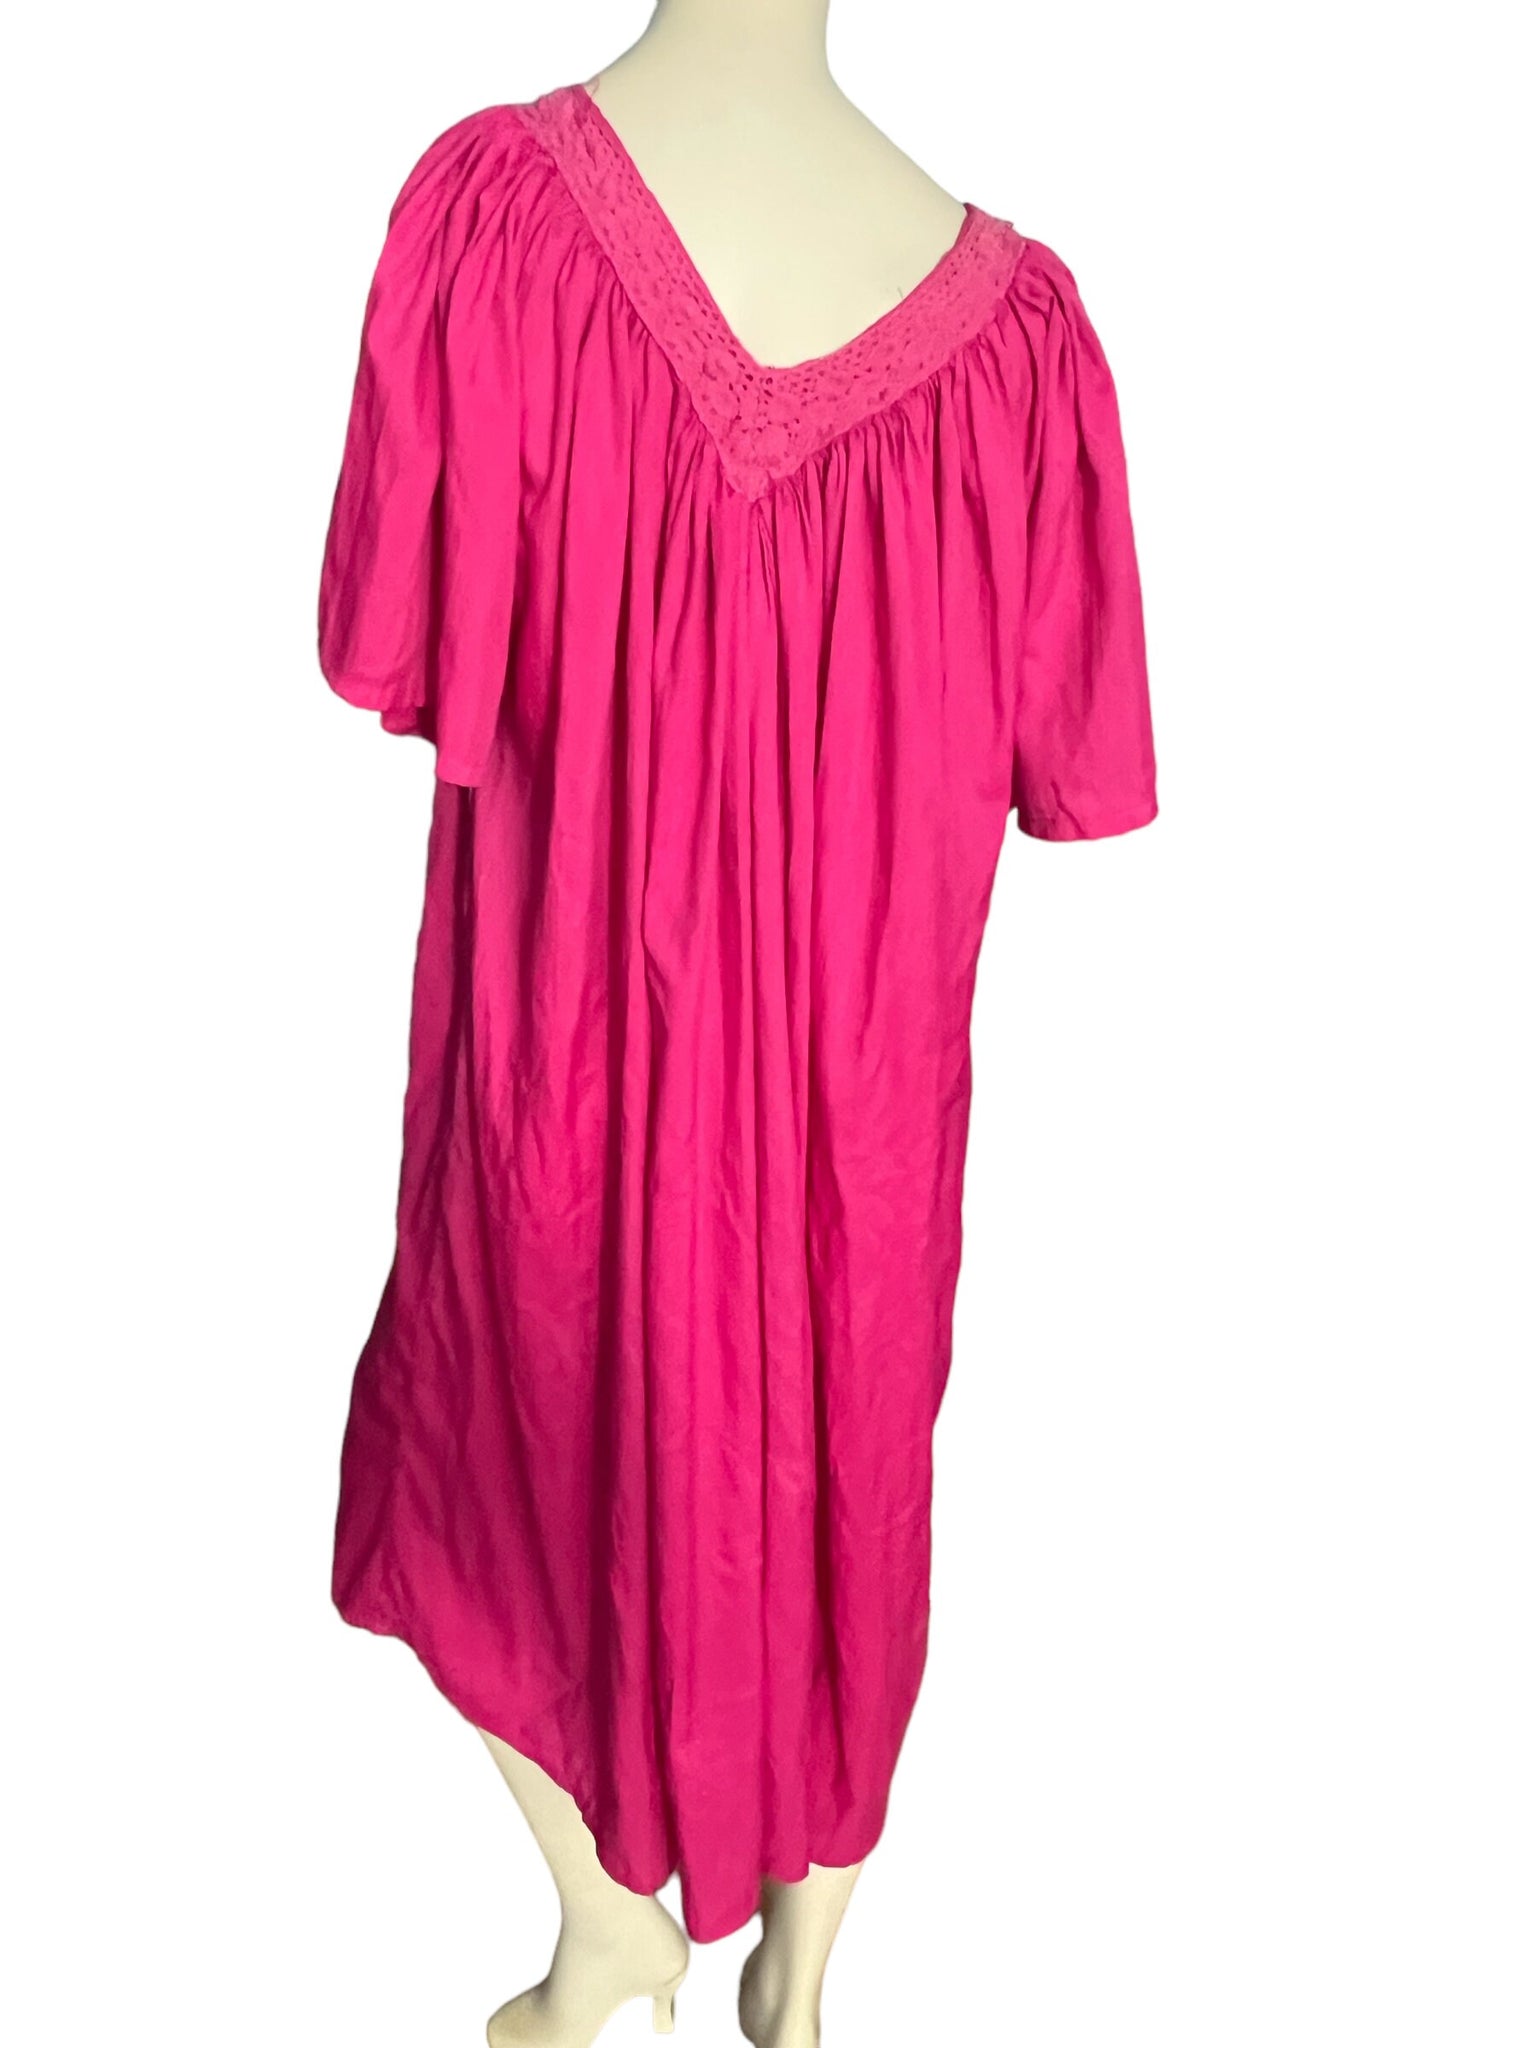 Vintage pink caftan dress one size